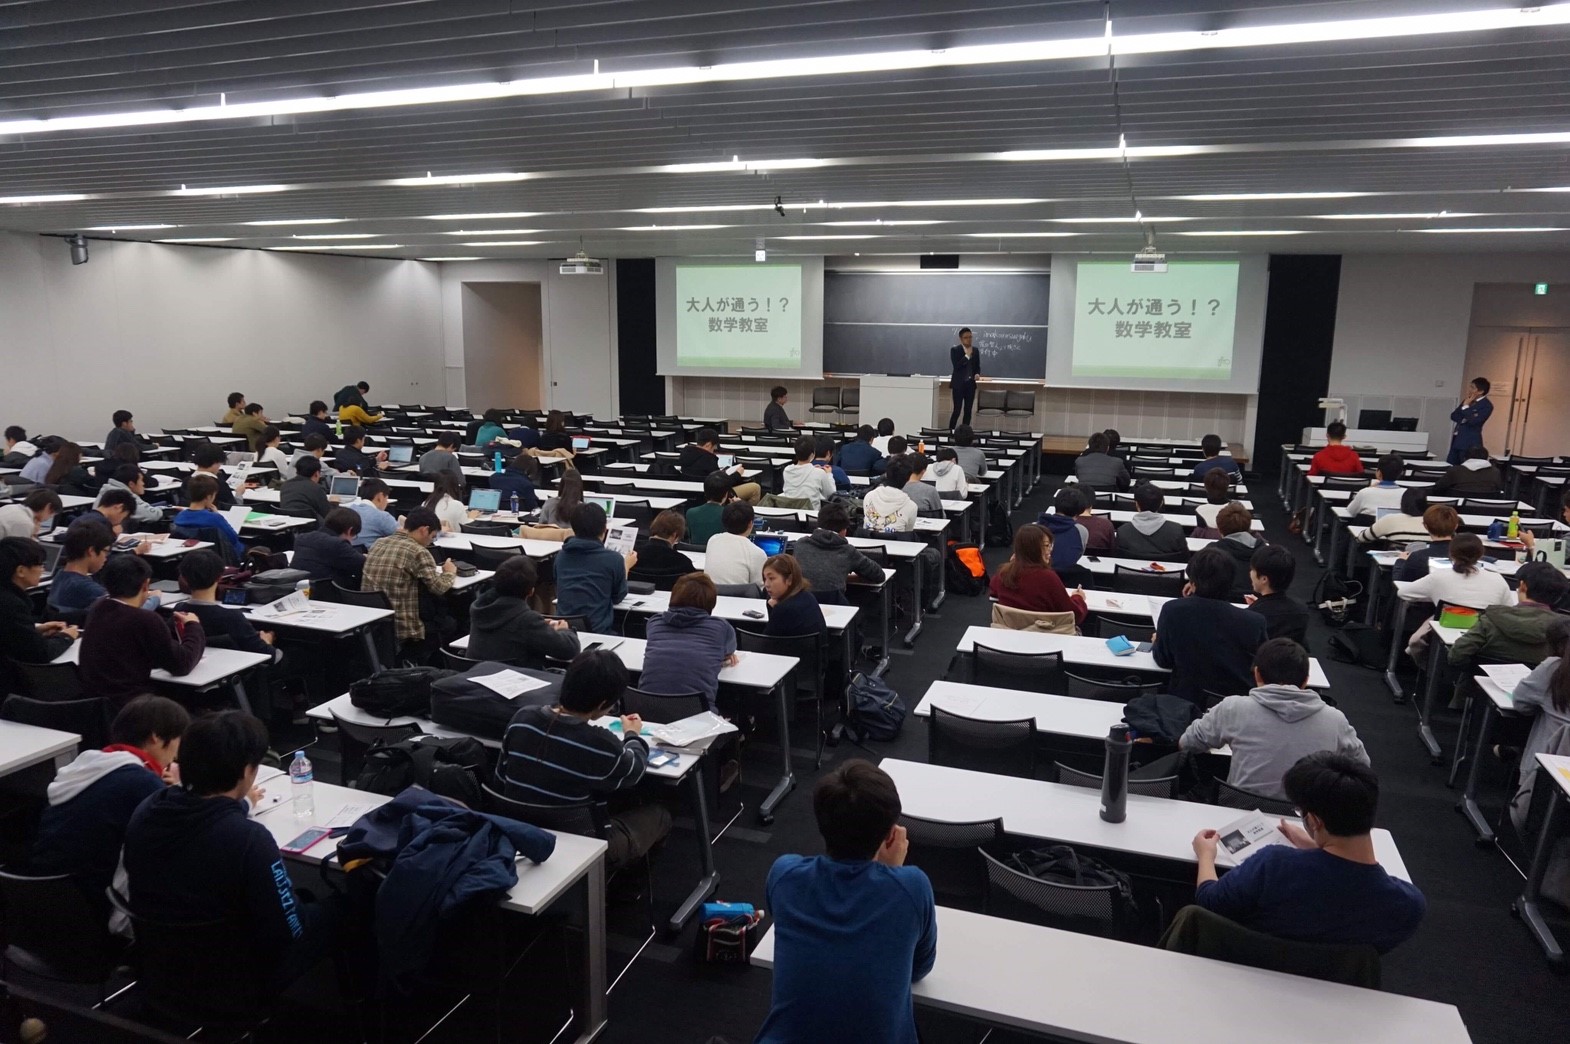 早稲田大学にて講演をしてきました